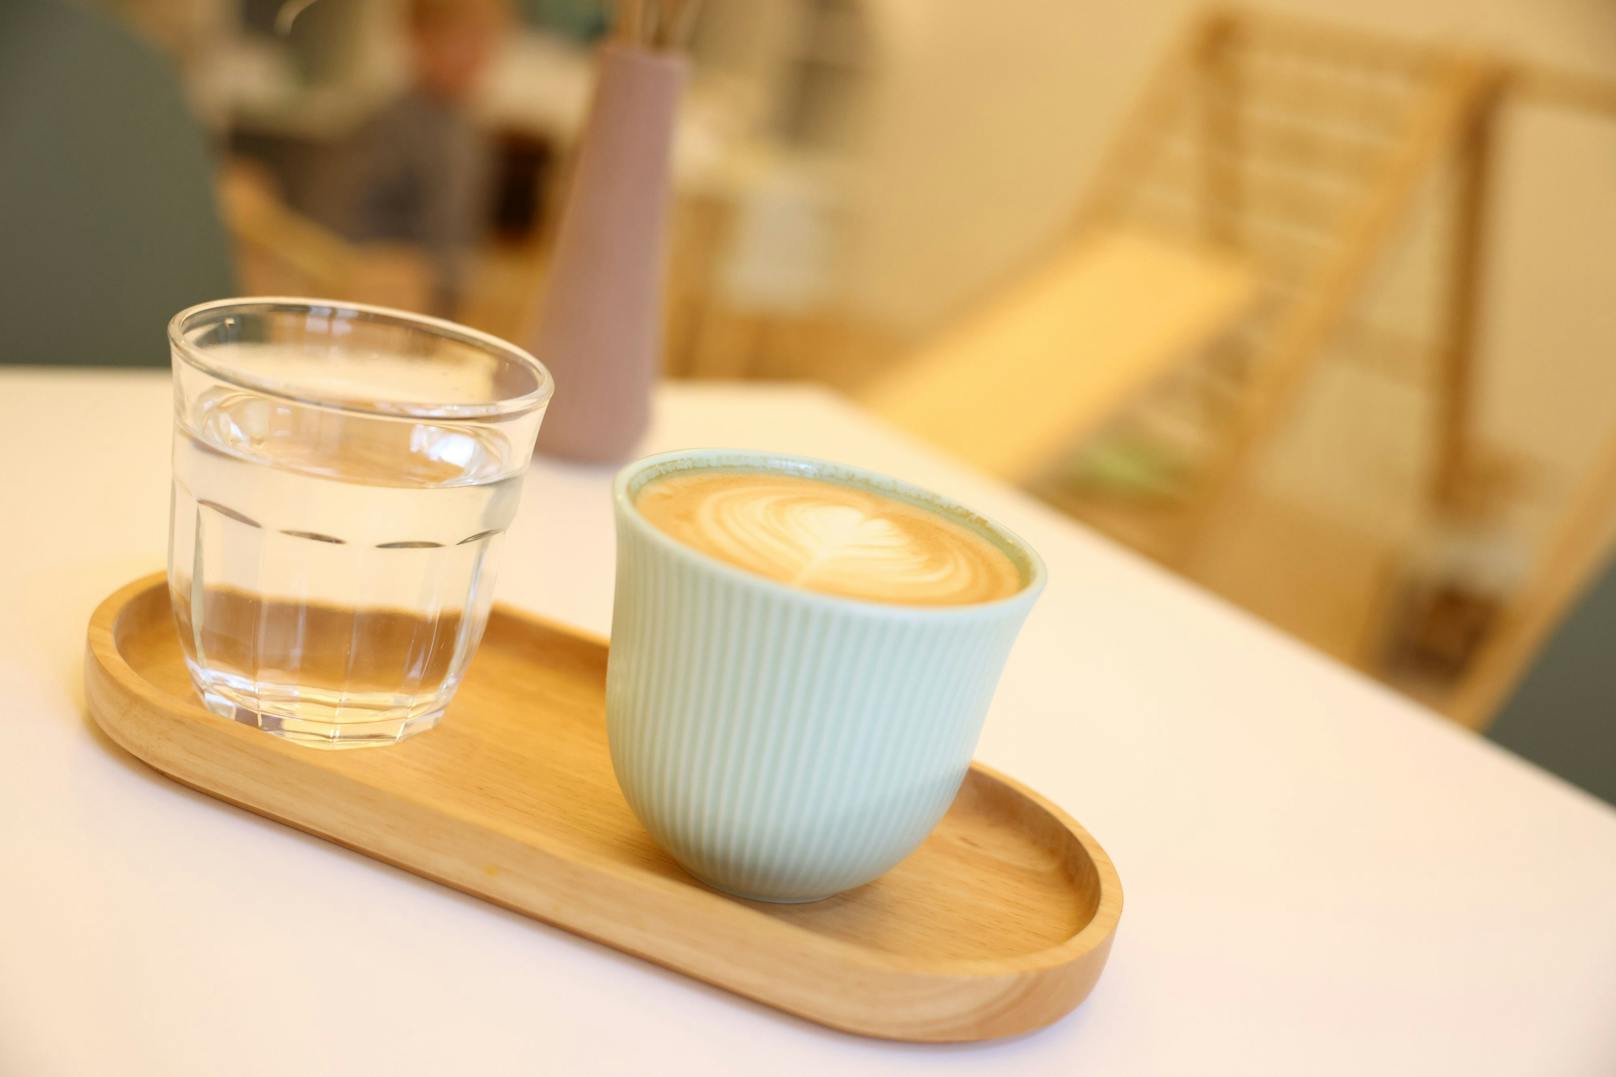 Der Kaffee ist fair trade und ethisch einwandfrei, garantiert die Cafébetreiberin